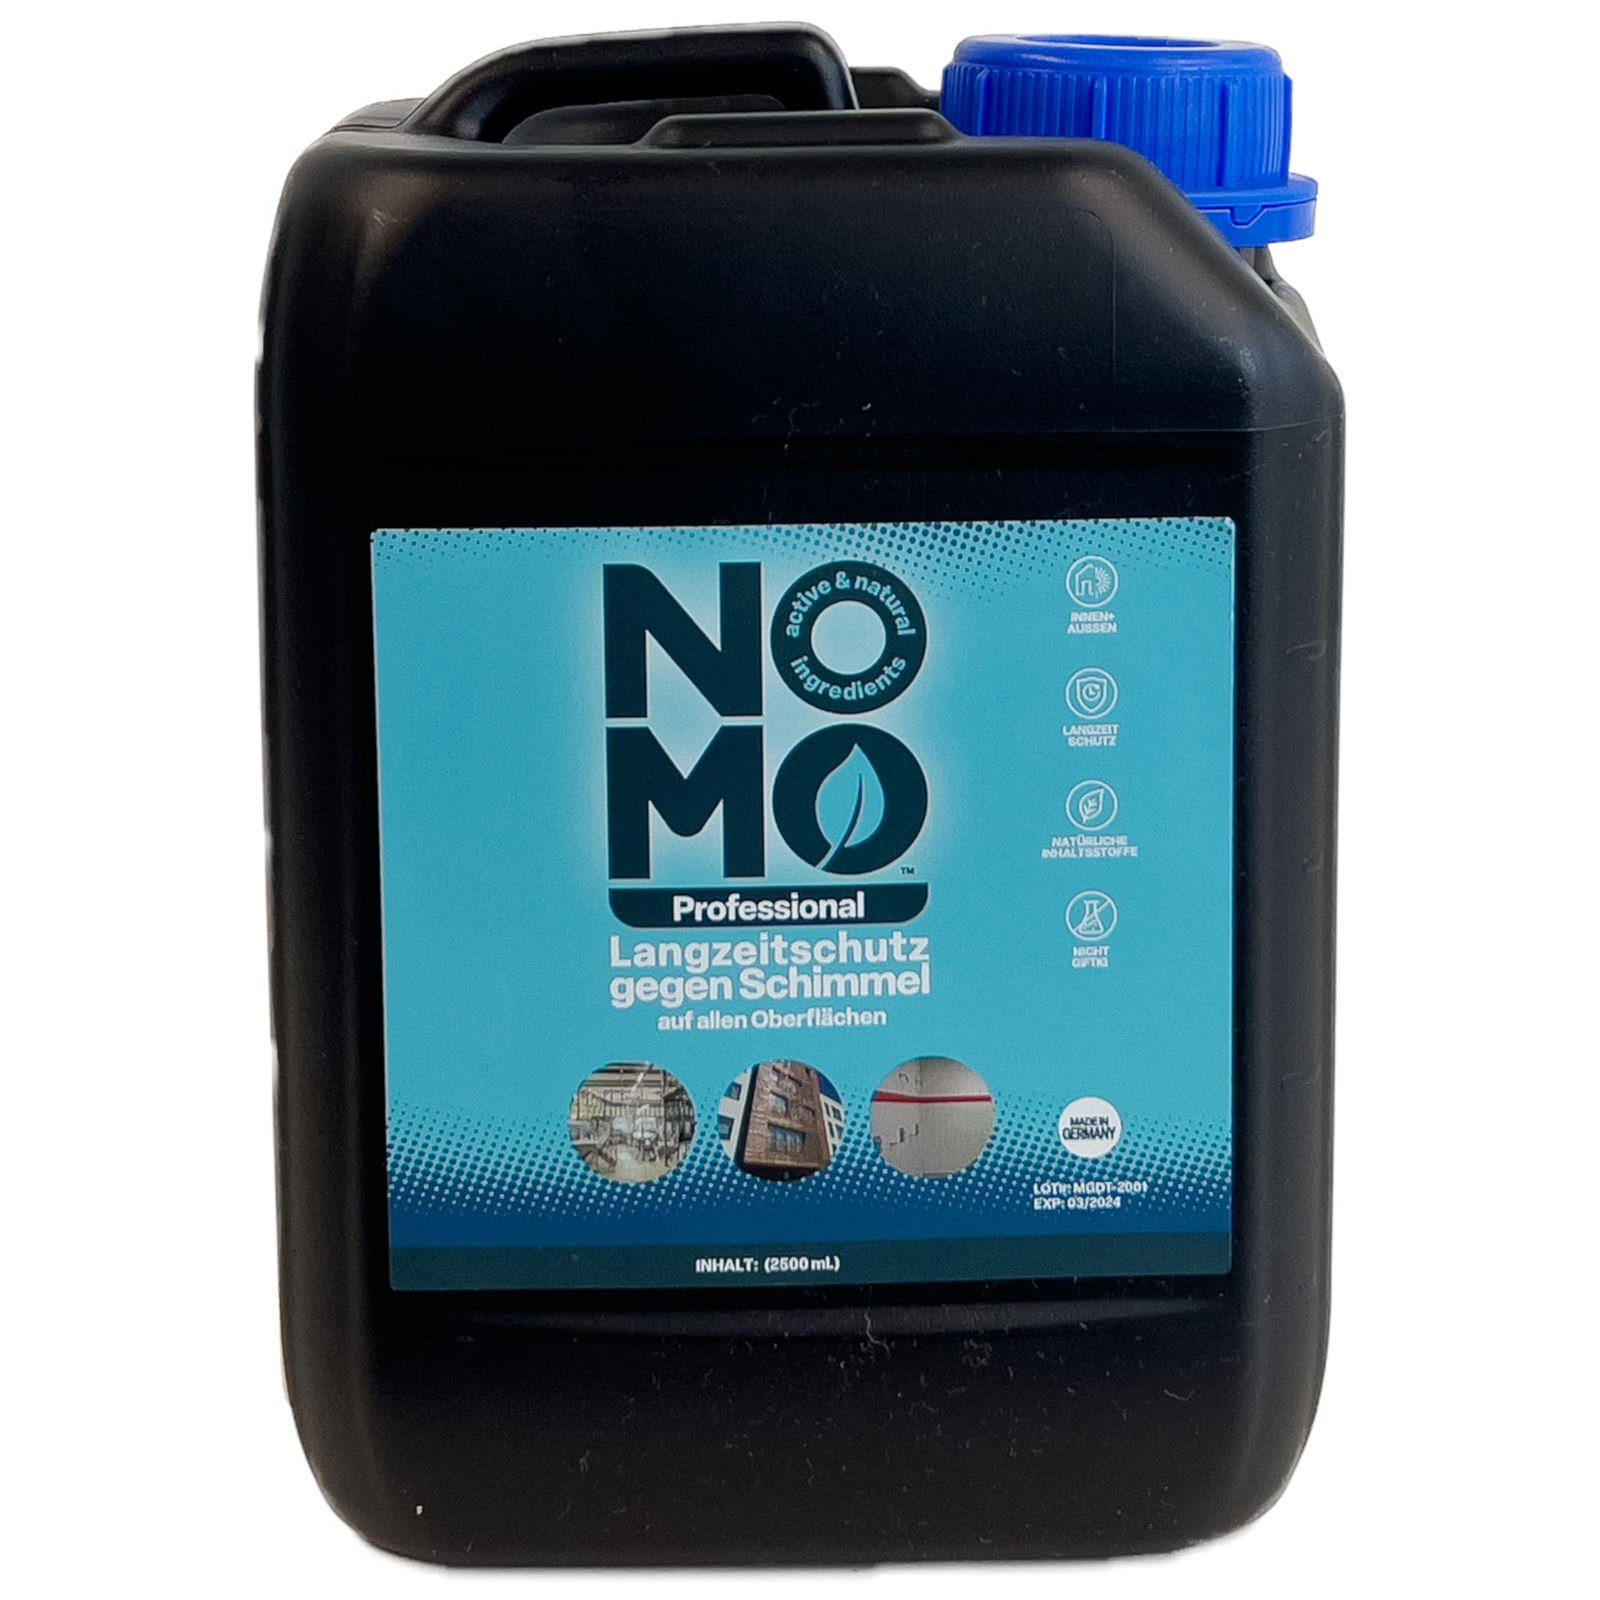 NOMO Professional Langzeitschutz gegen Schimmel - 2,5 Liter Schimmelentferner